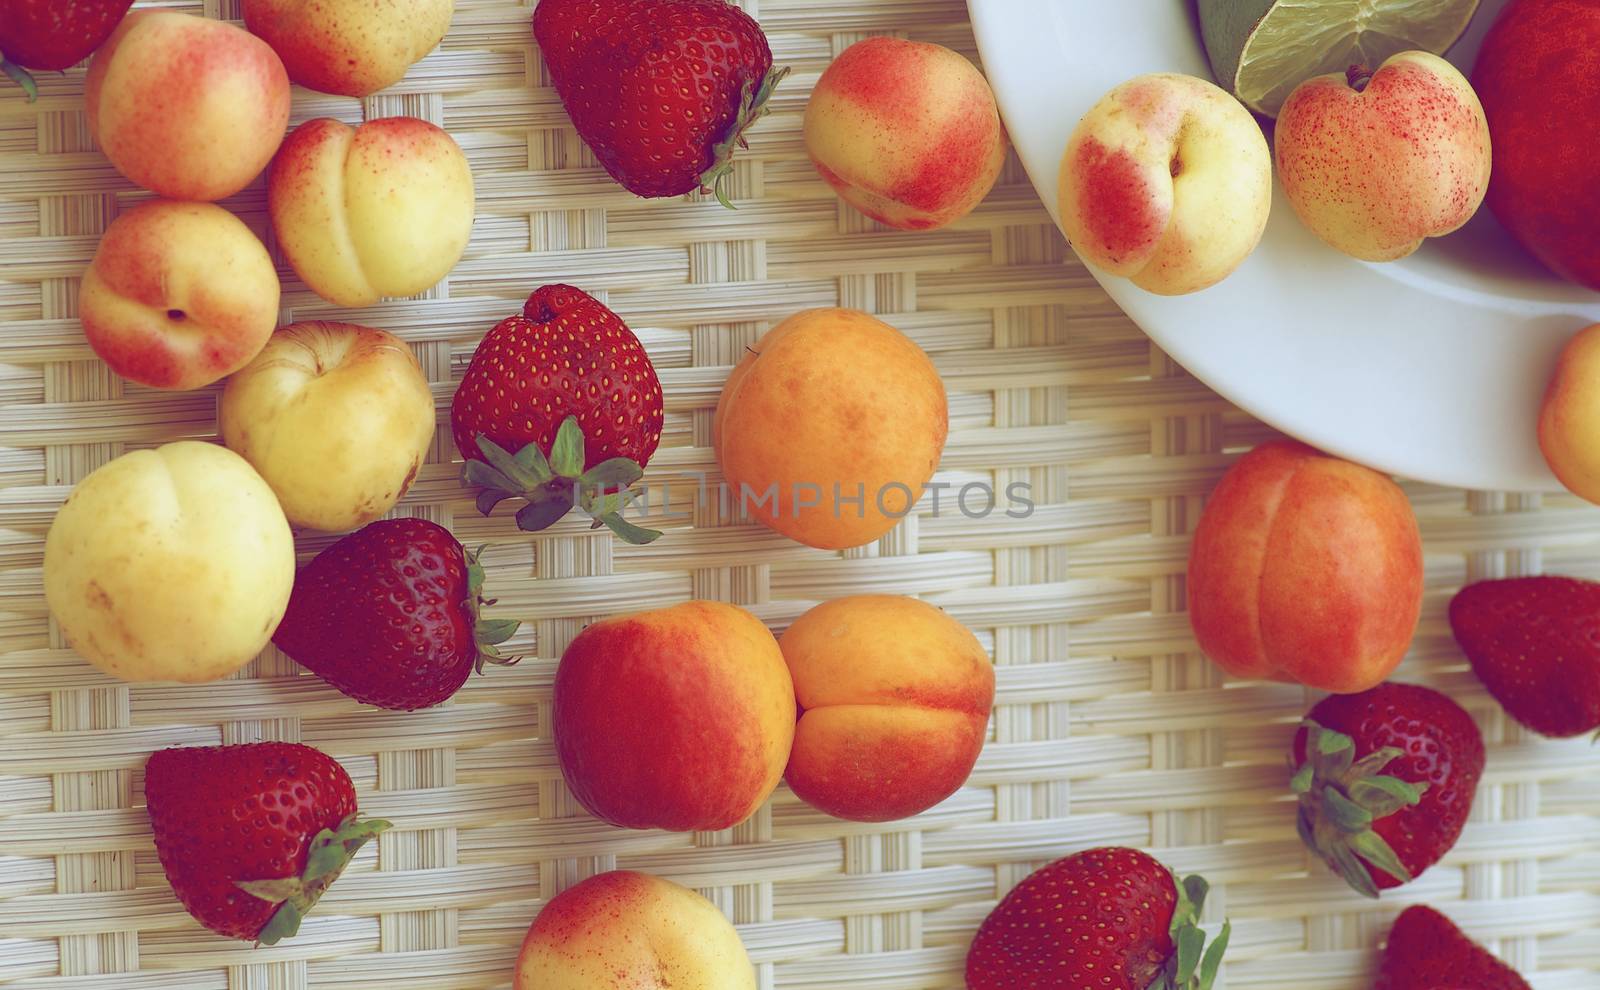 Summer Fruits by zhekos